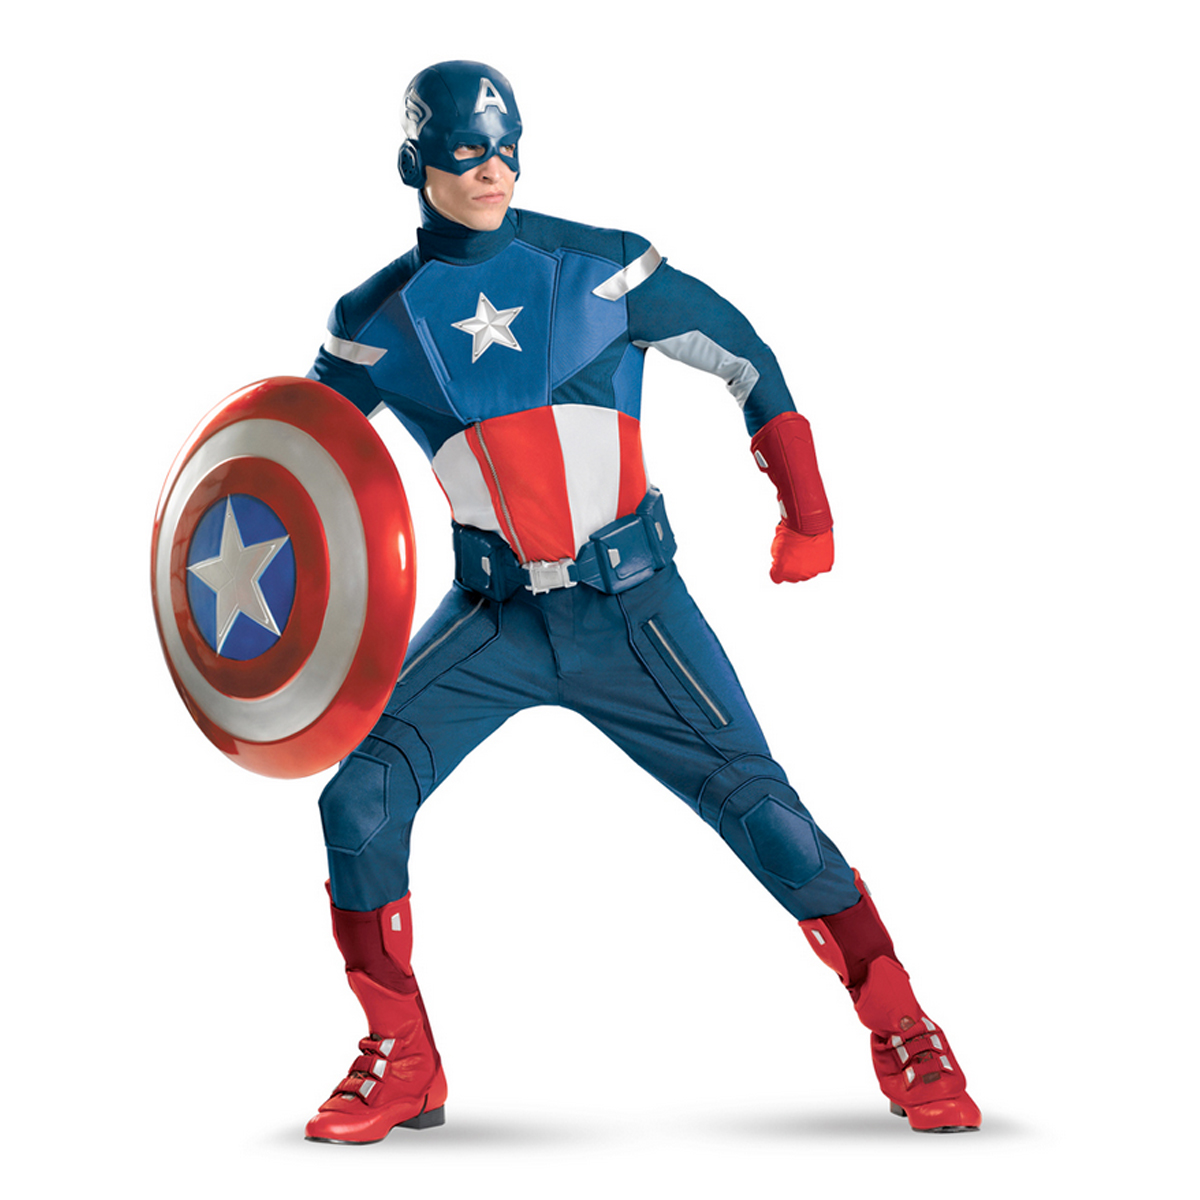 Captain America - $1,602